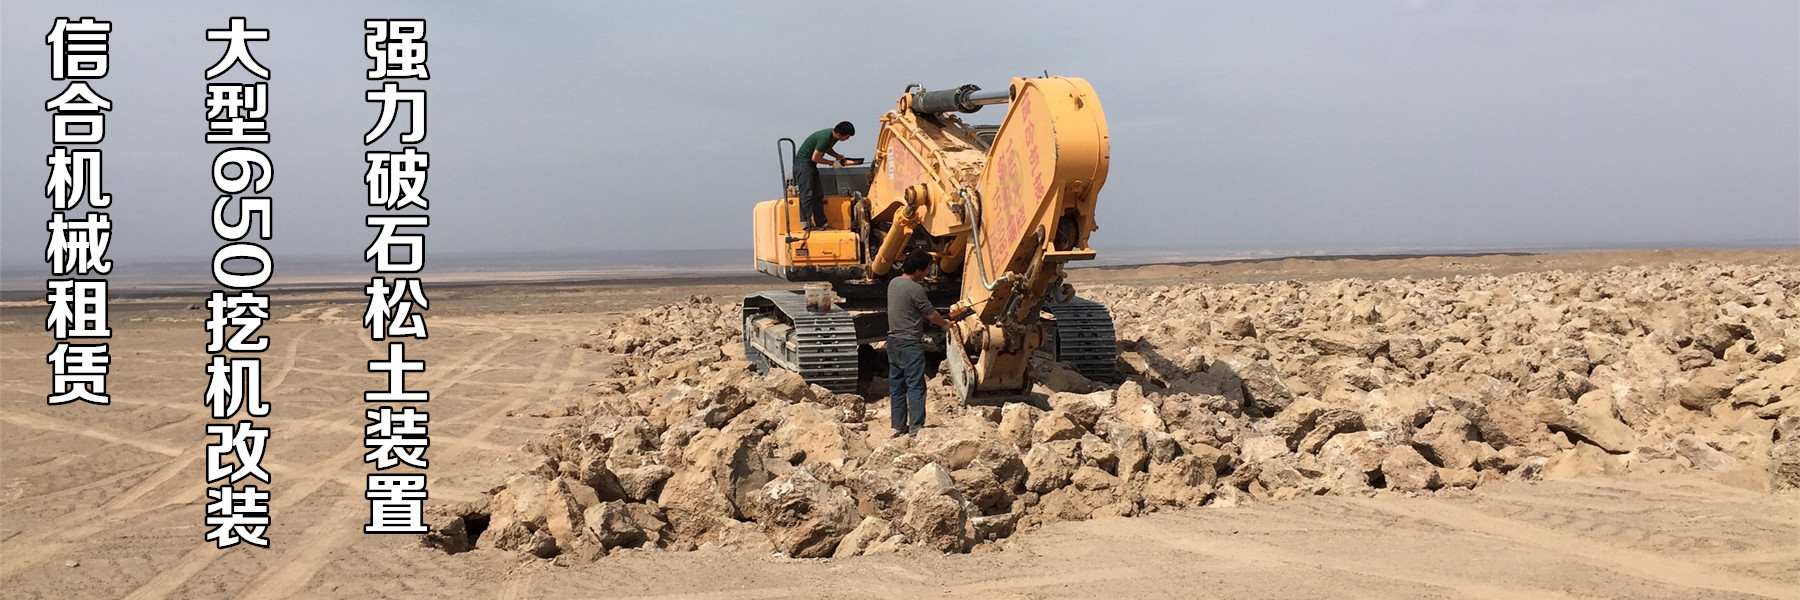 新疆大型机械设备里洗砂机应该怎么生产才更环保节能